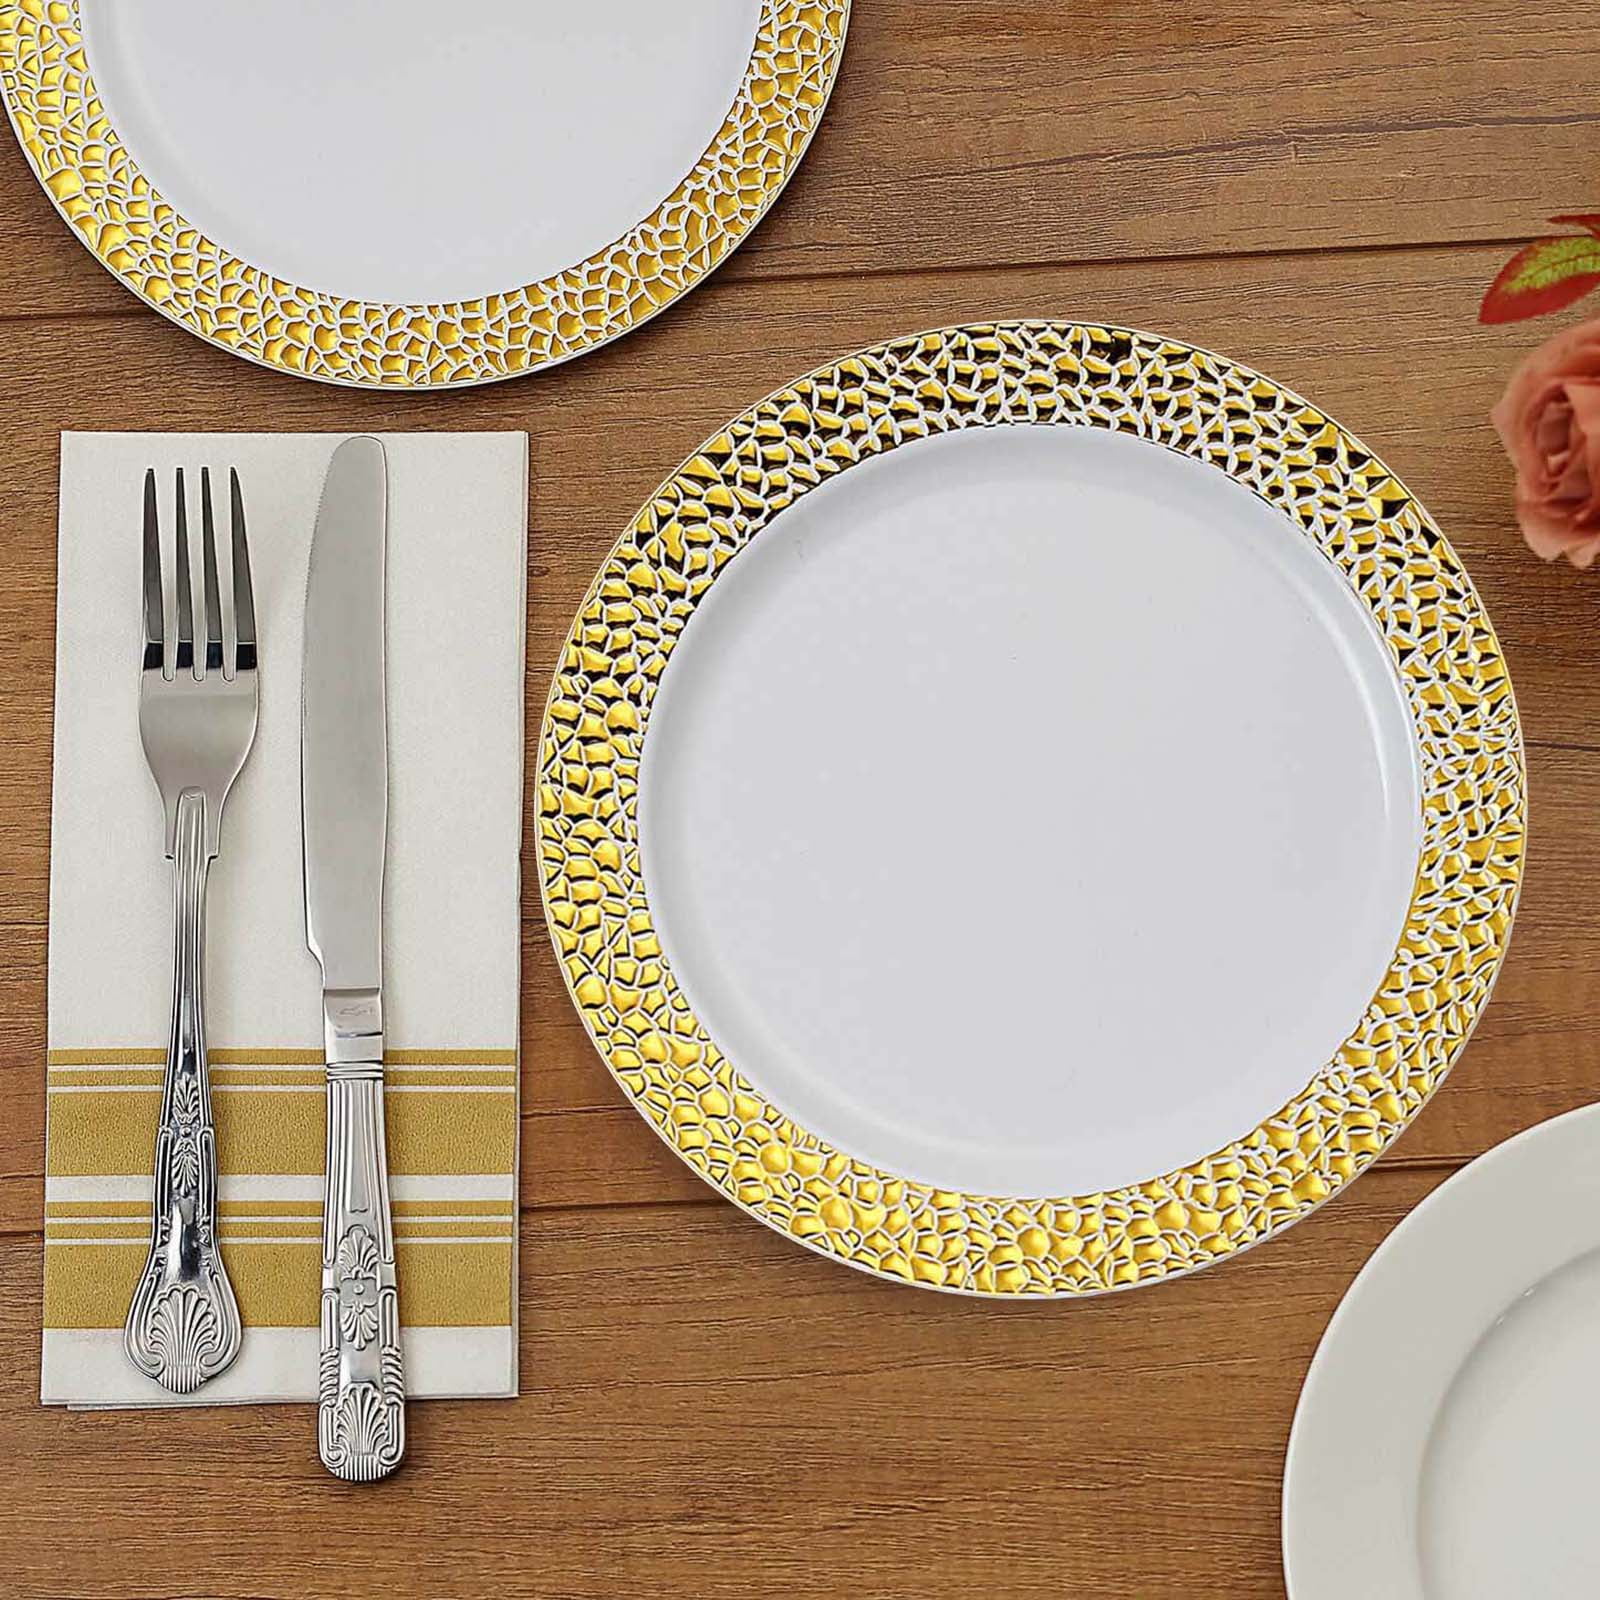 Set Elegant Disposable Plastic Plates Gold Rim White 25- Dinner Plates PB 50 Pieces for 25 guests Heavy duty Premium Plates for Party Wedding Appetizer Fancy Reusable 25- Dessert Plates 